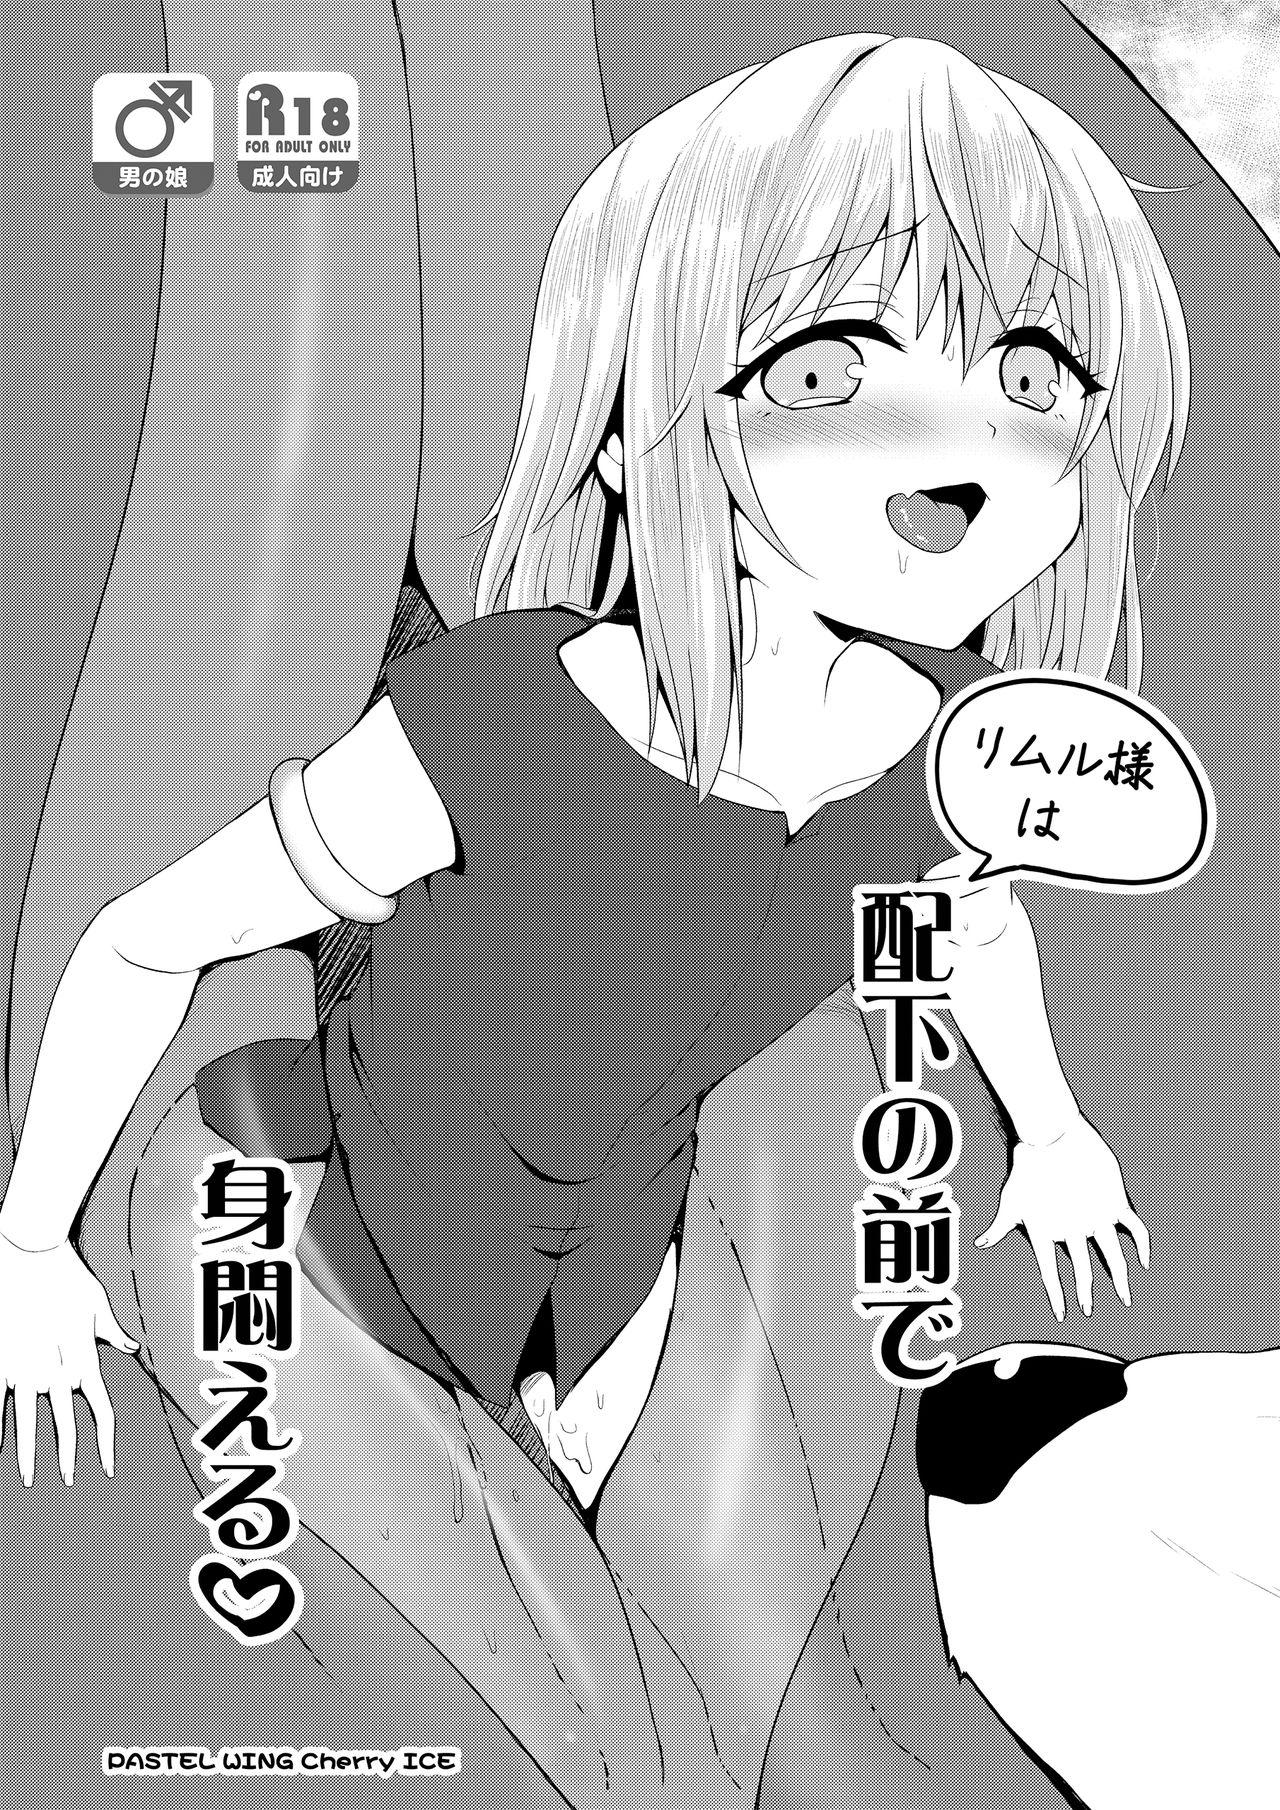 Assfingering Haika no mae de mimodaeru - Tensei shitara slime datta ken Uniform - Page 1